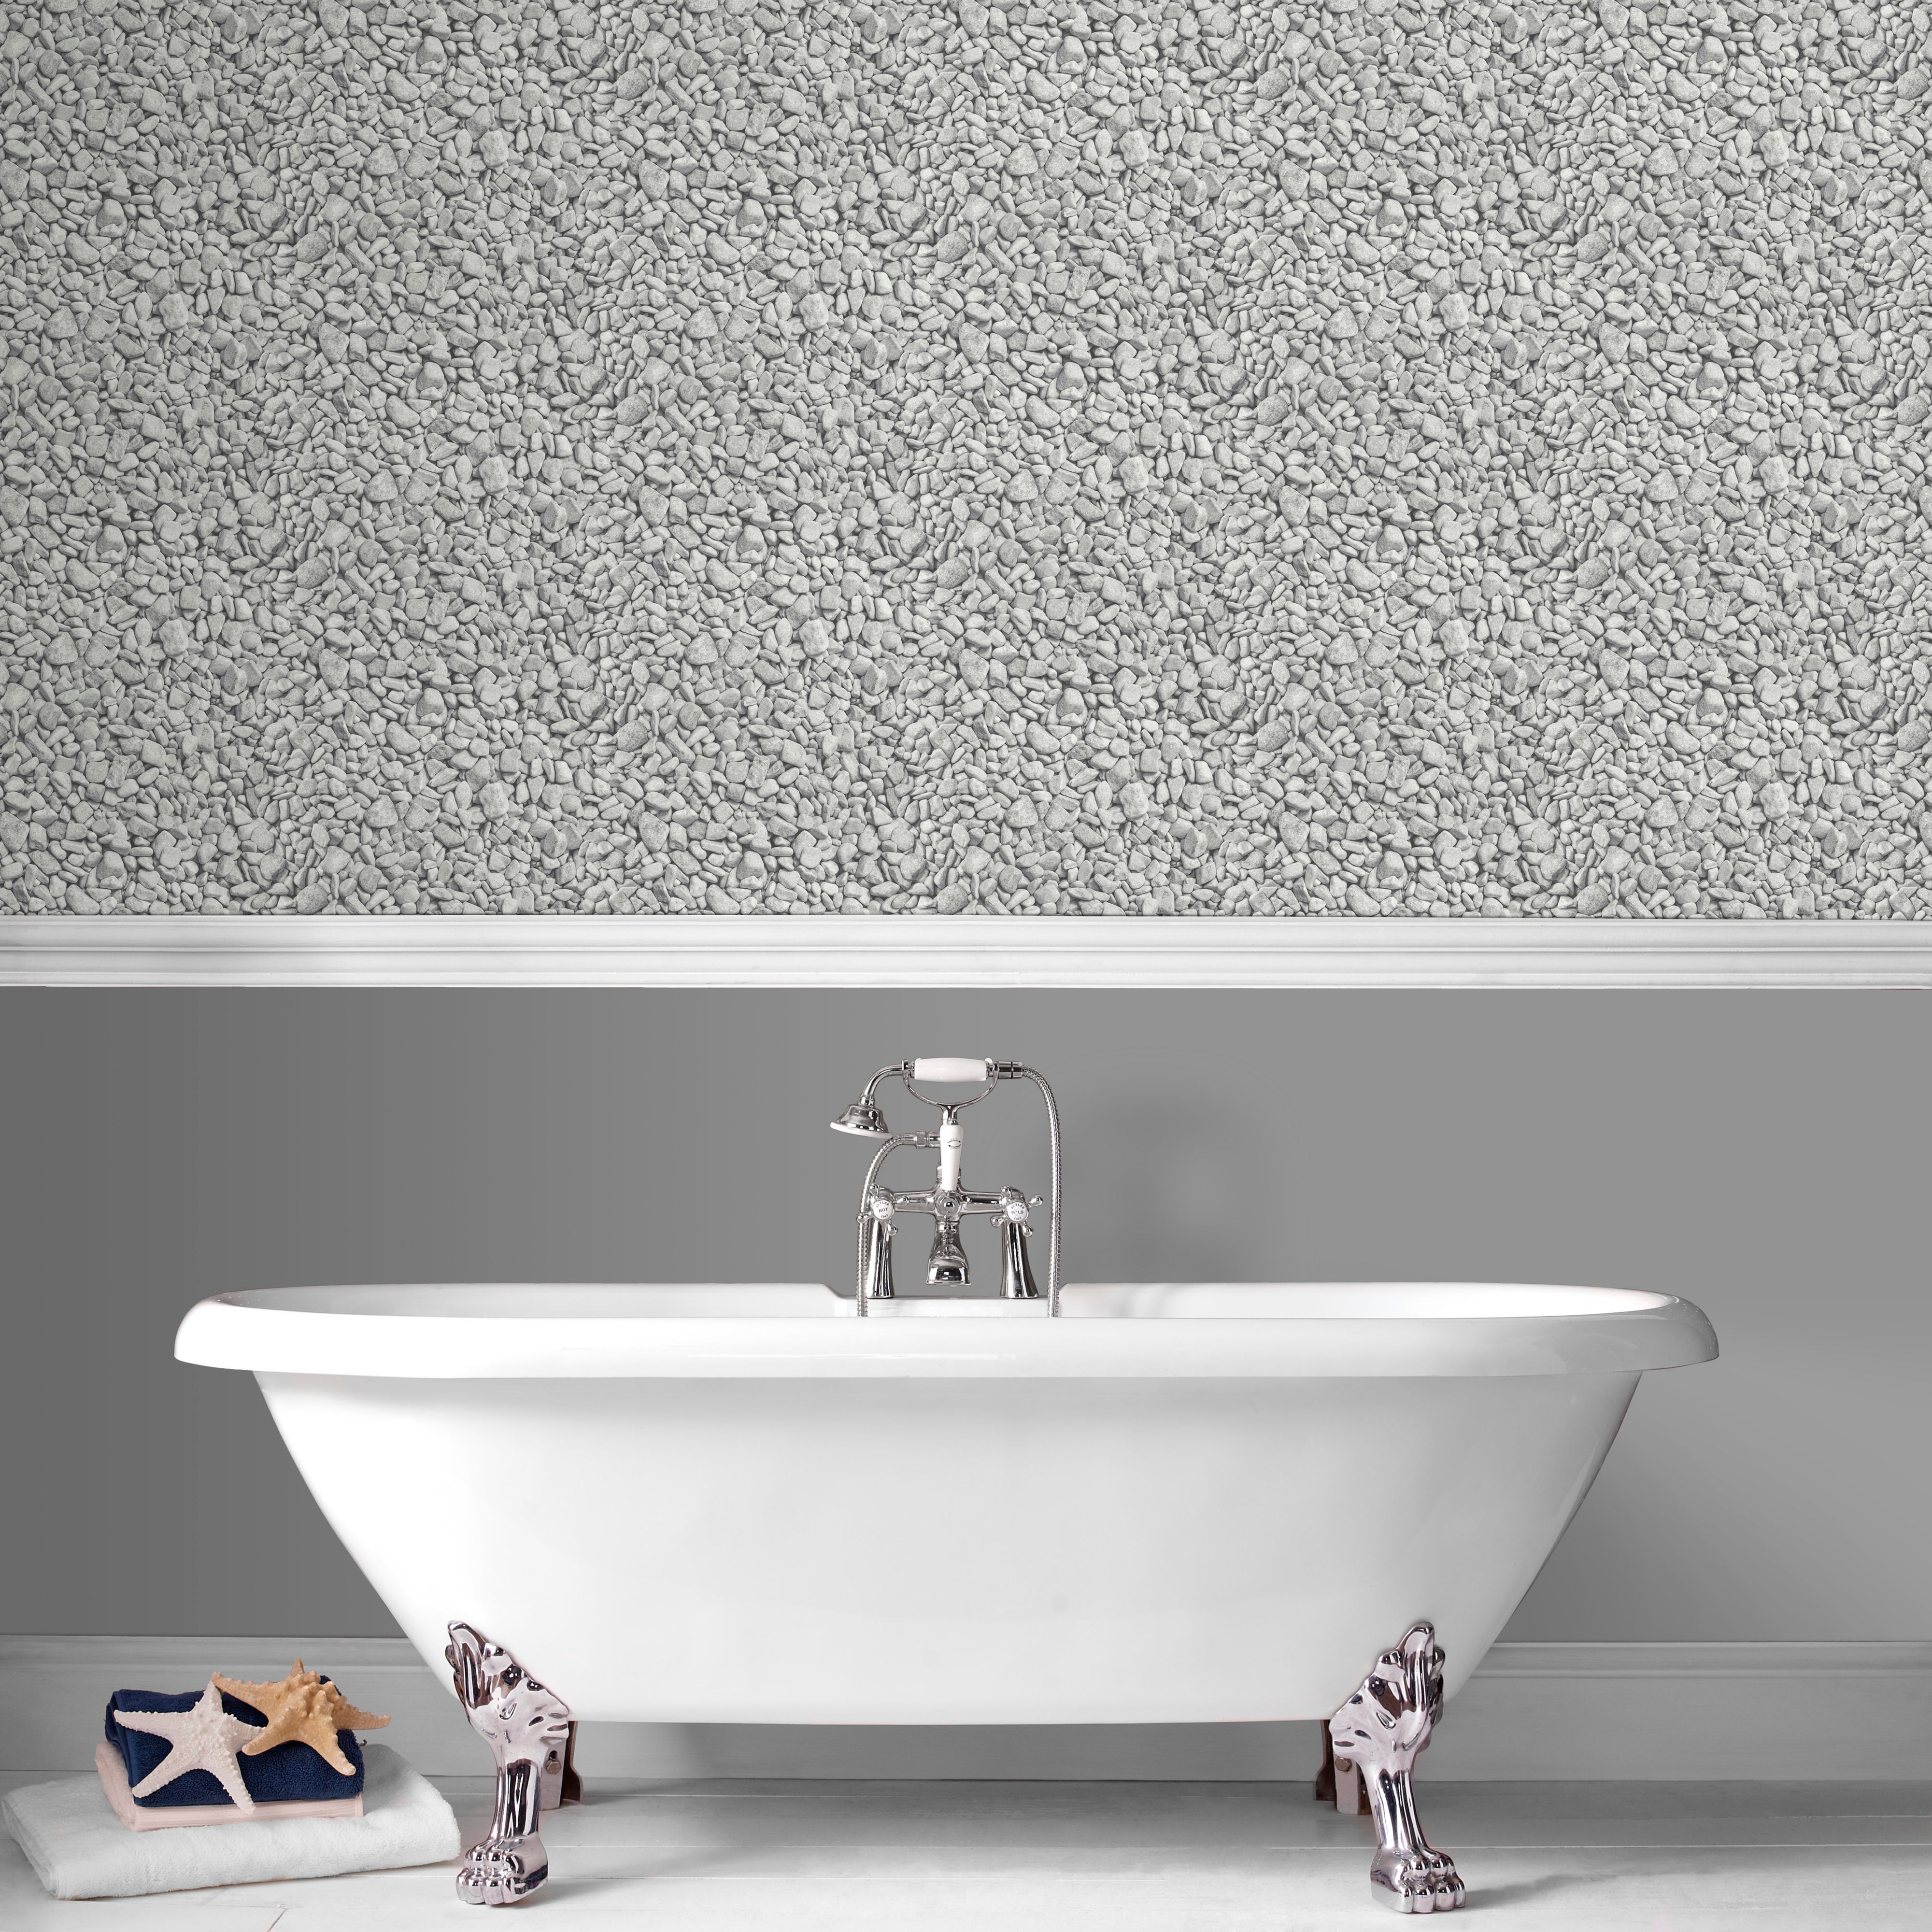 Bathroom Wall Stickers Bubble - HD Wallpaper 